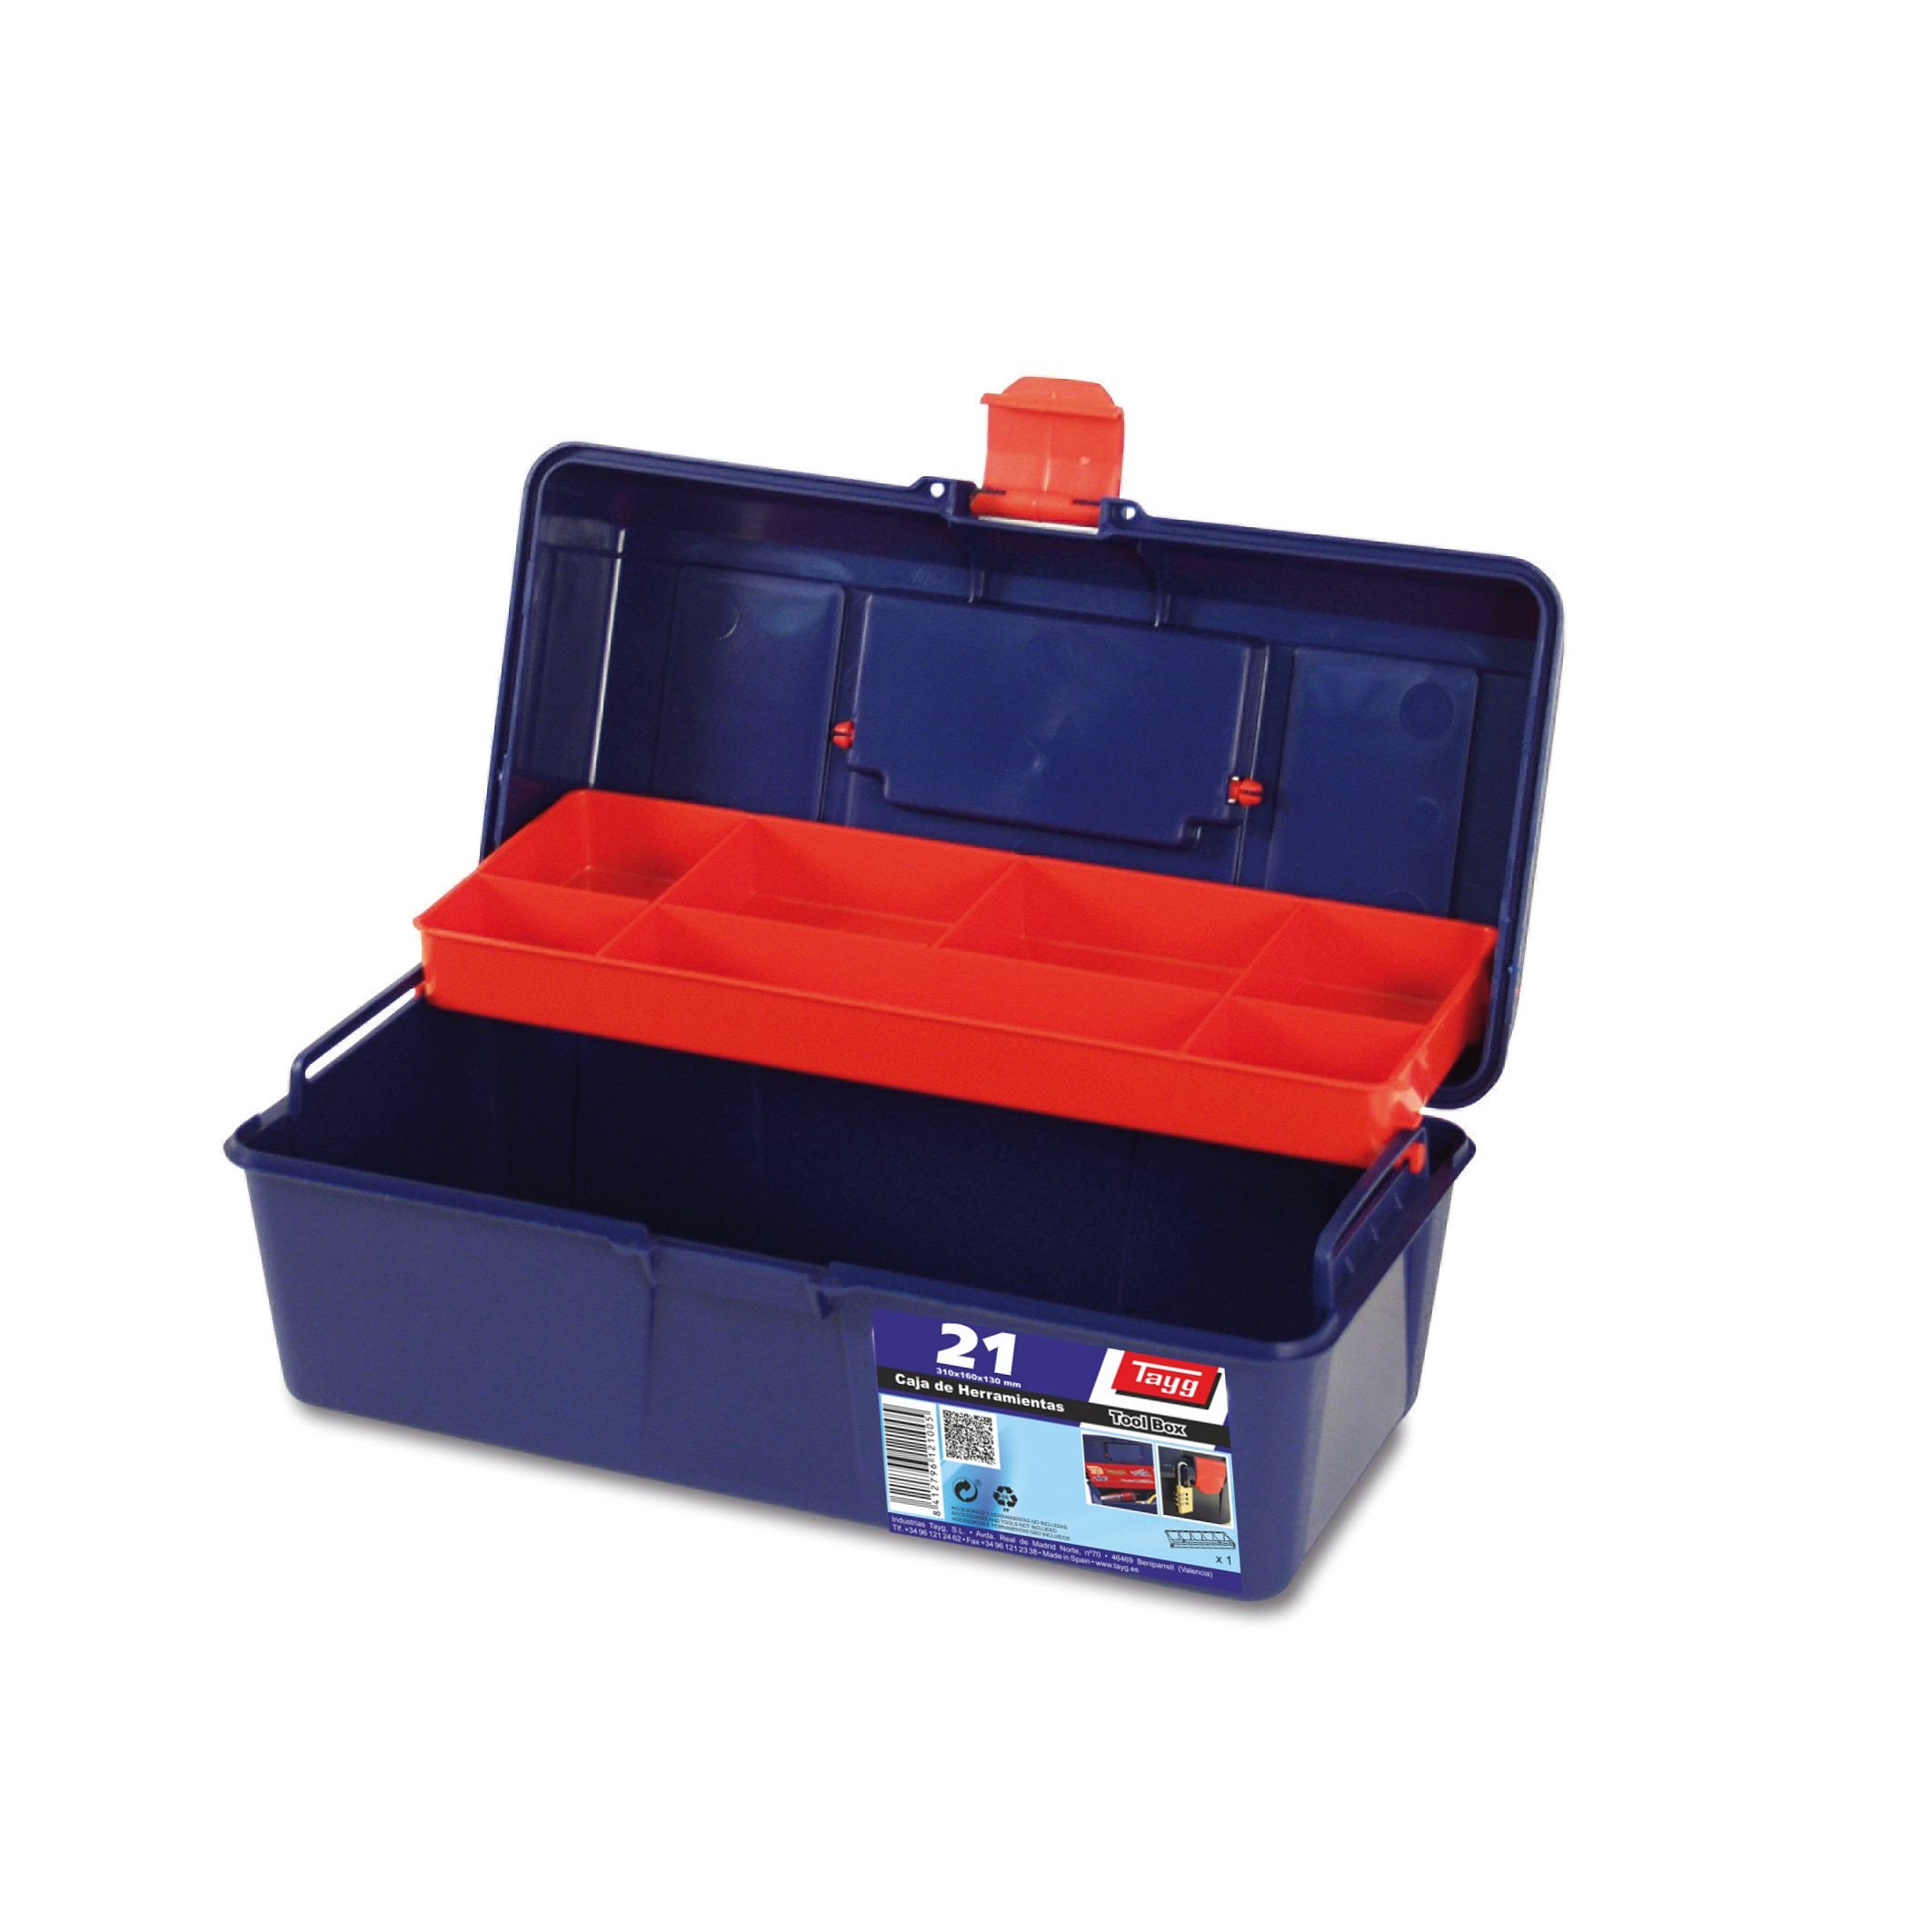 Ящик пластиковый для инструментов Tayg Box 21 Caja htas, 31х16х13 см, синий с красным (121005) - фото 1